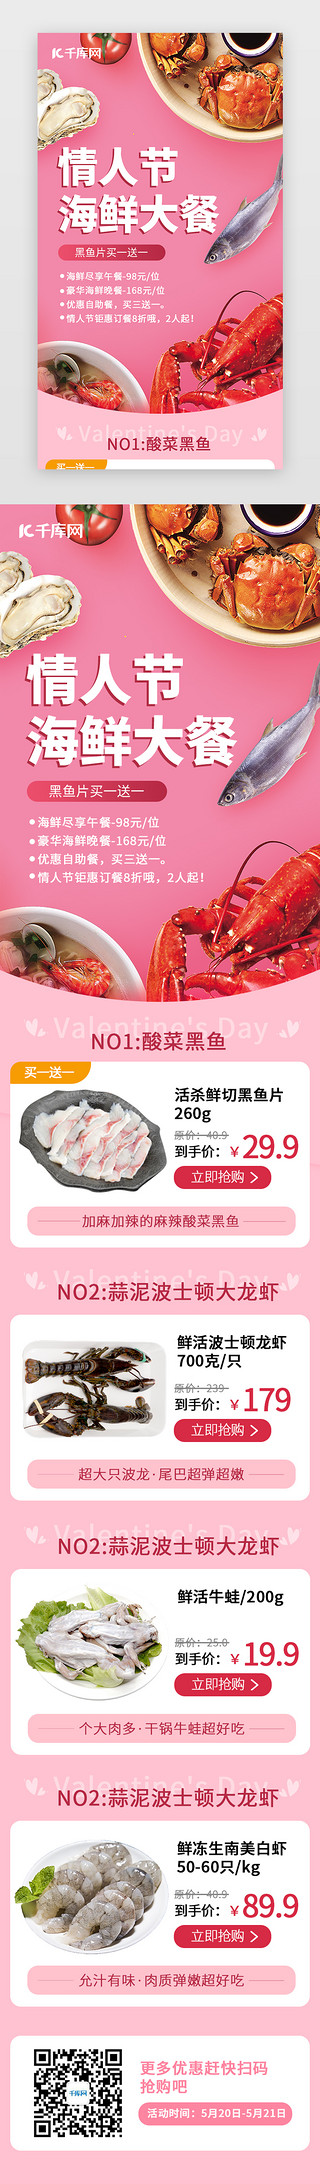 海鲜恋上粉丝UI设计素材_情人节海鲜大餐H5